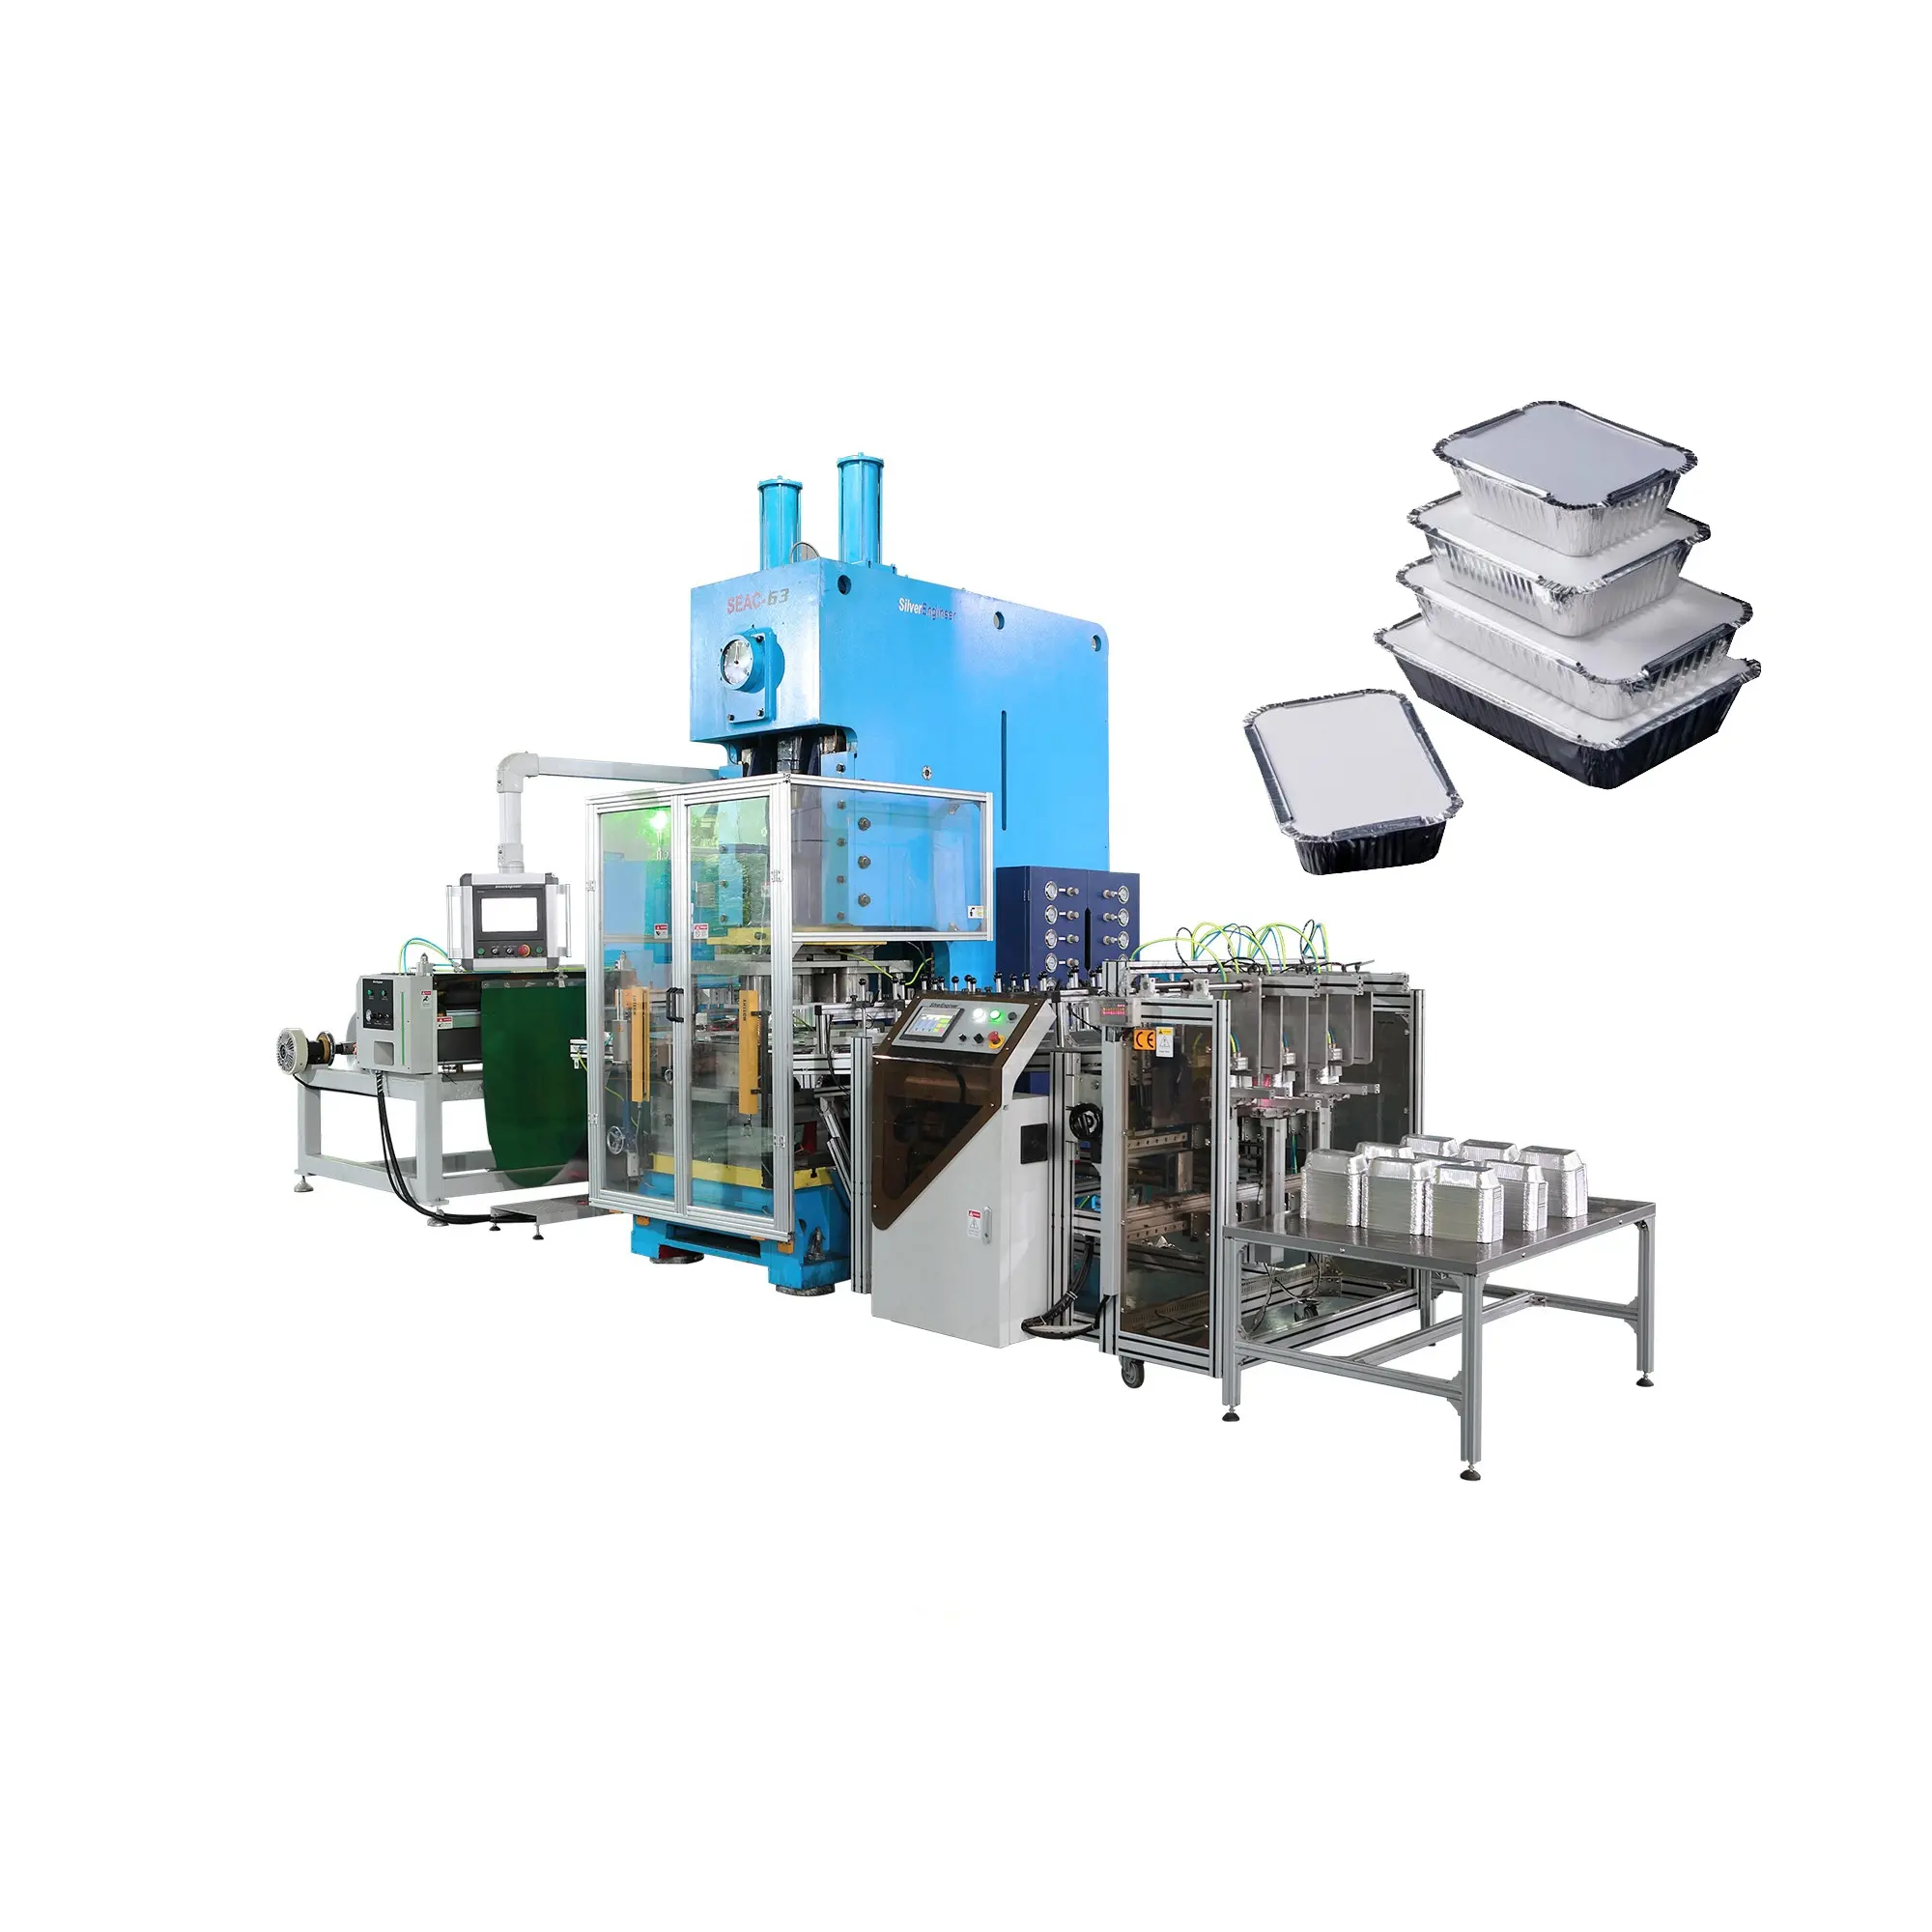 Piccola produzione rapida di macchine per la produzione di contenitori monouso in alluminio per alimenti